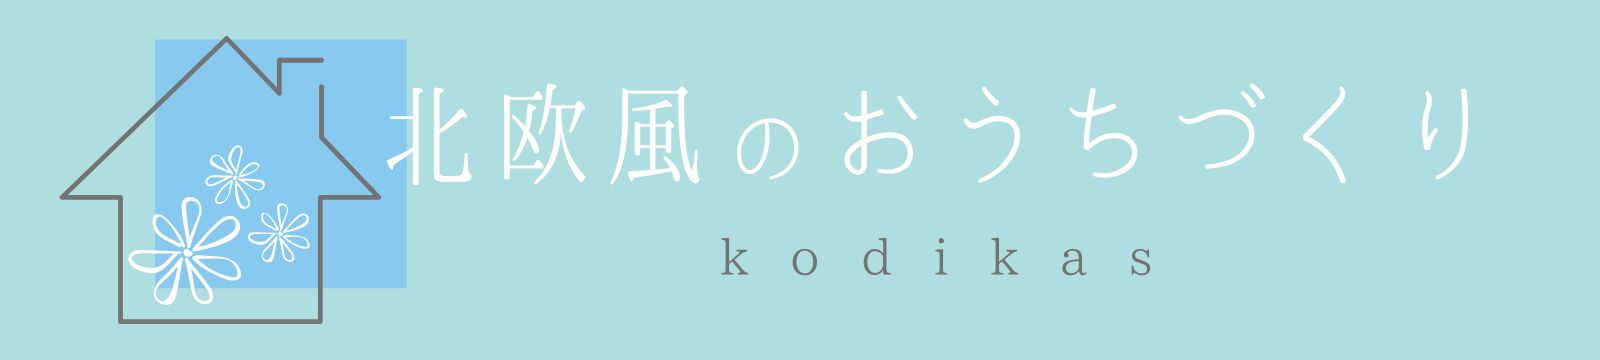 北欧風のおうちづくりブログ 〜kodikas〜